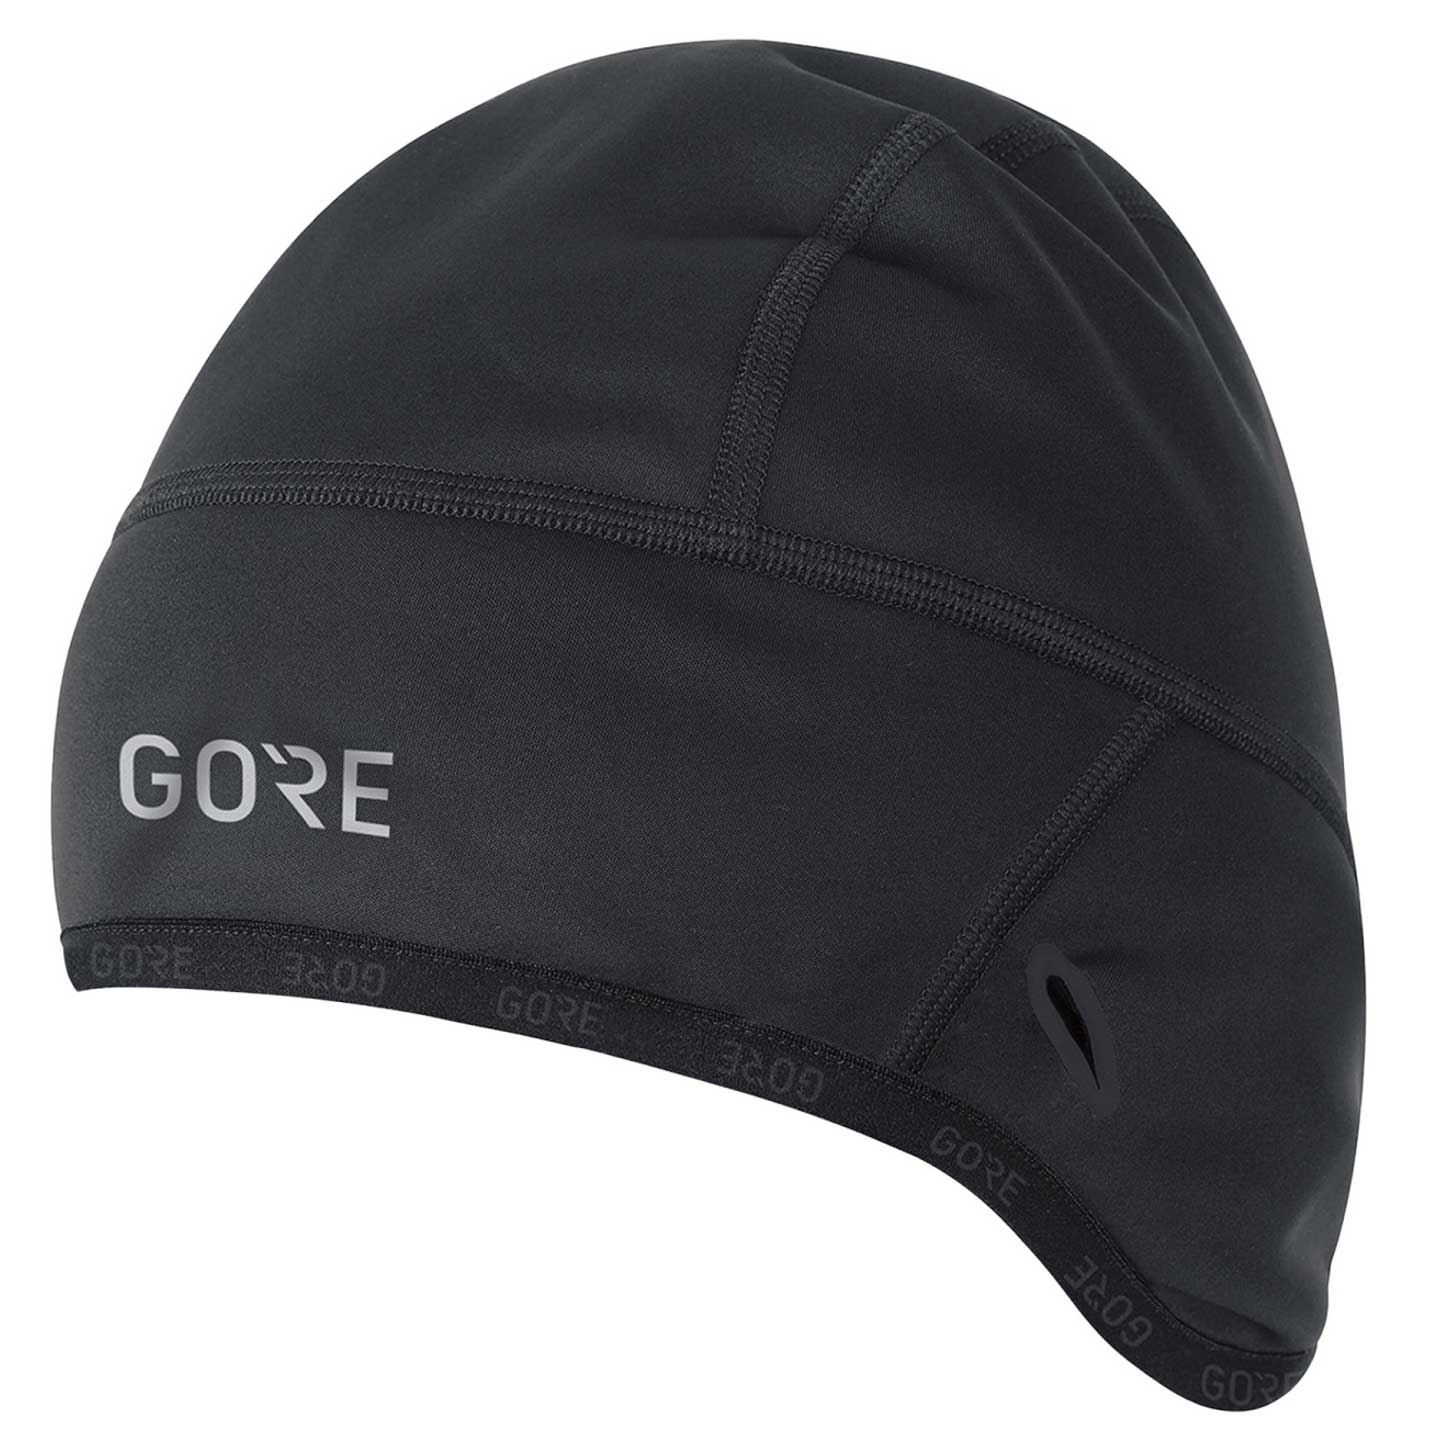 Produktbild von GOREWEAR GORE® WINDSTOPPER® Thermo Mütze - schwarz 9900